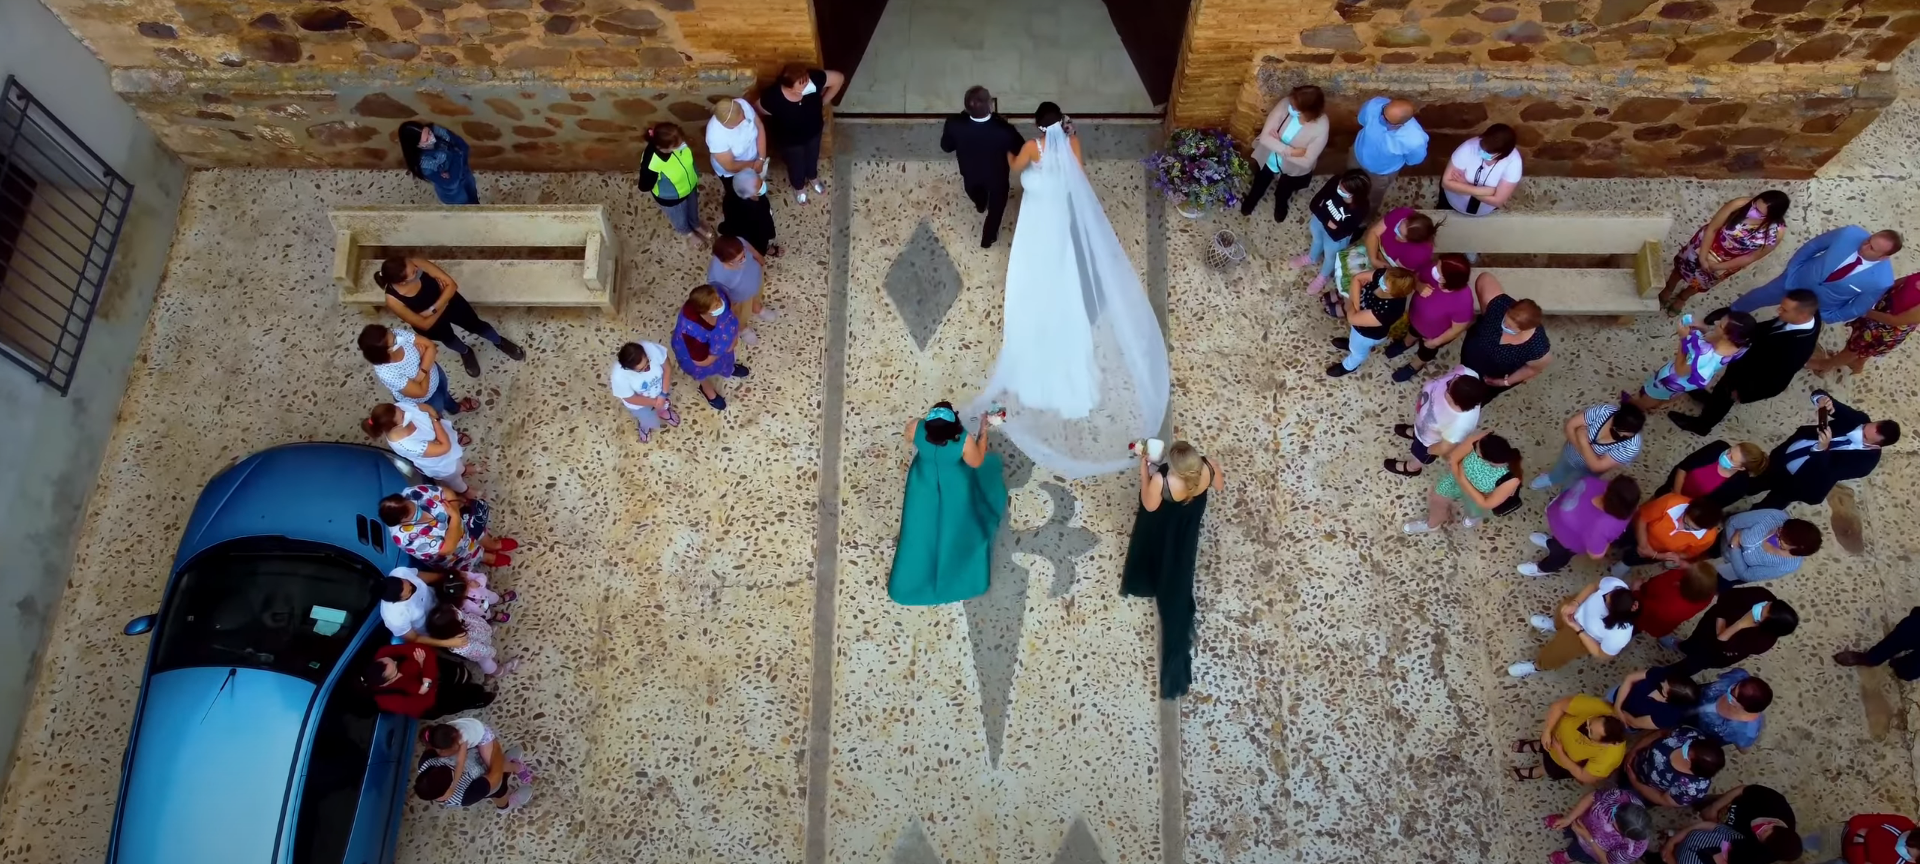 Fotografía aérea de bodas grabadas con dron. Imagen romántica y espectacular desde el cielo, capturando la belleza y la emoción de una ceremonia de boda. Una perspectiva única que realza la magia del momento.